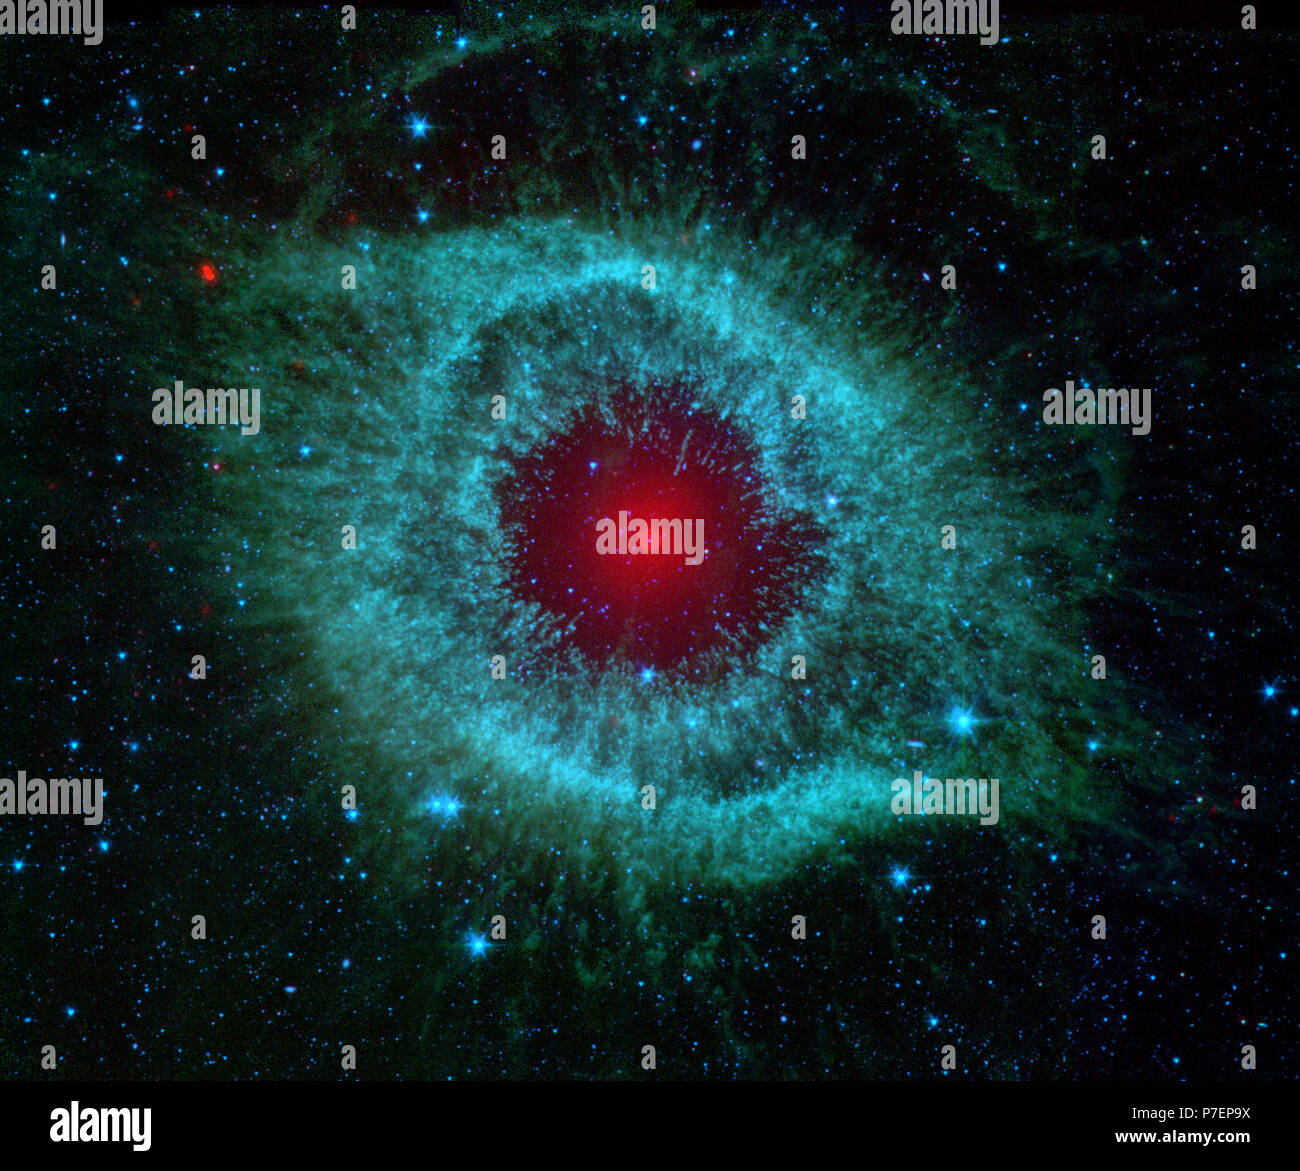 Comete Kick up polvere nella nebulosa Helix. Questa immagine ad infrarossi dalla NASA il telescopio spaziale Spitzer mostra la nebulosa Helix, un respiro cosmico starlet spesso fotografata da astronomi dilettanti per i suoi colori vivaci e inquietante rassomiglianza con un occhio gigante. Foto Stock